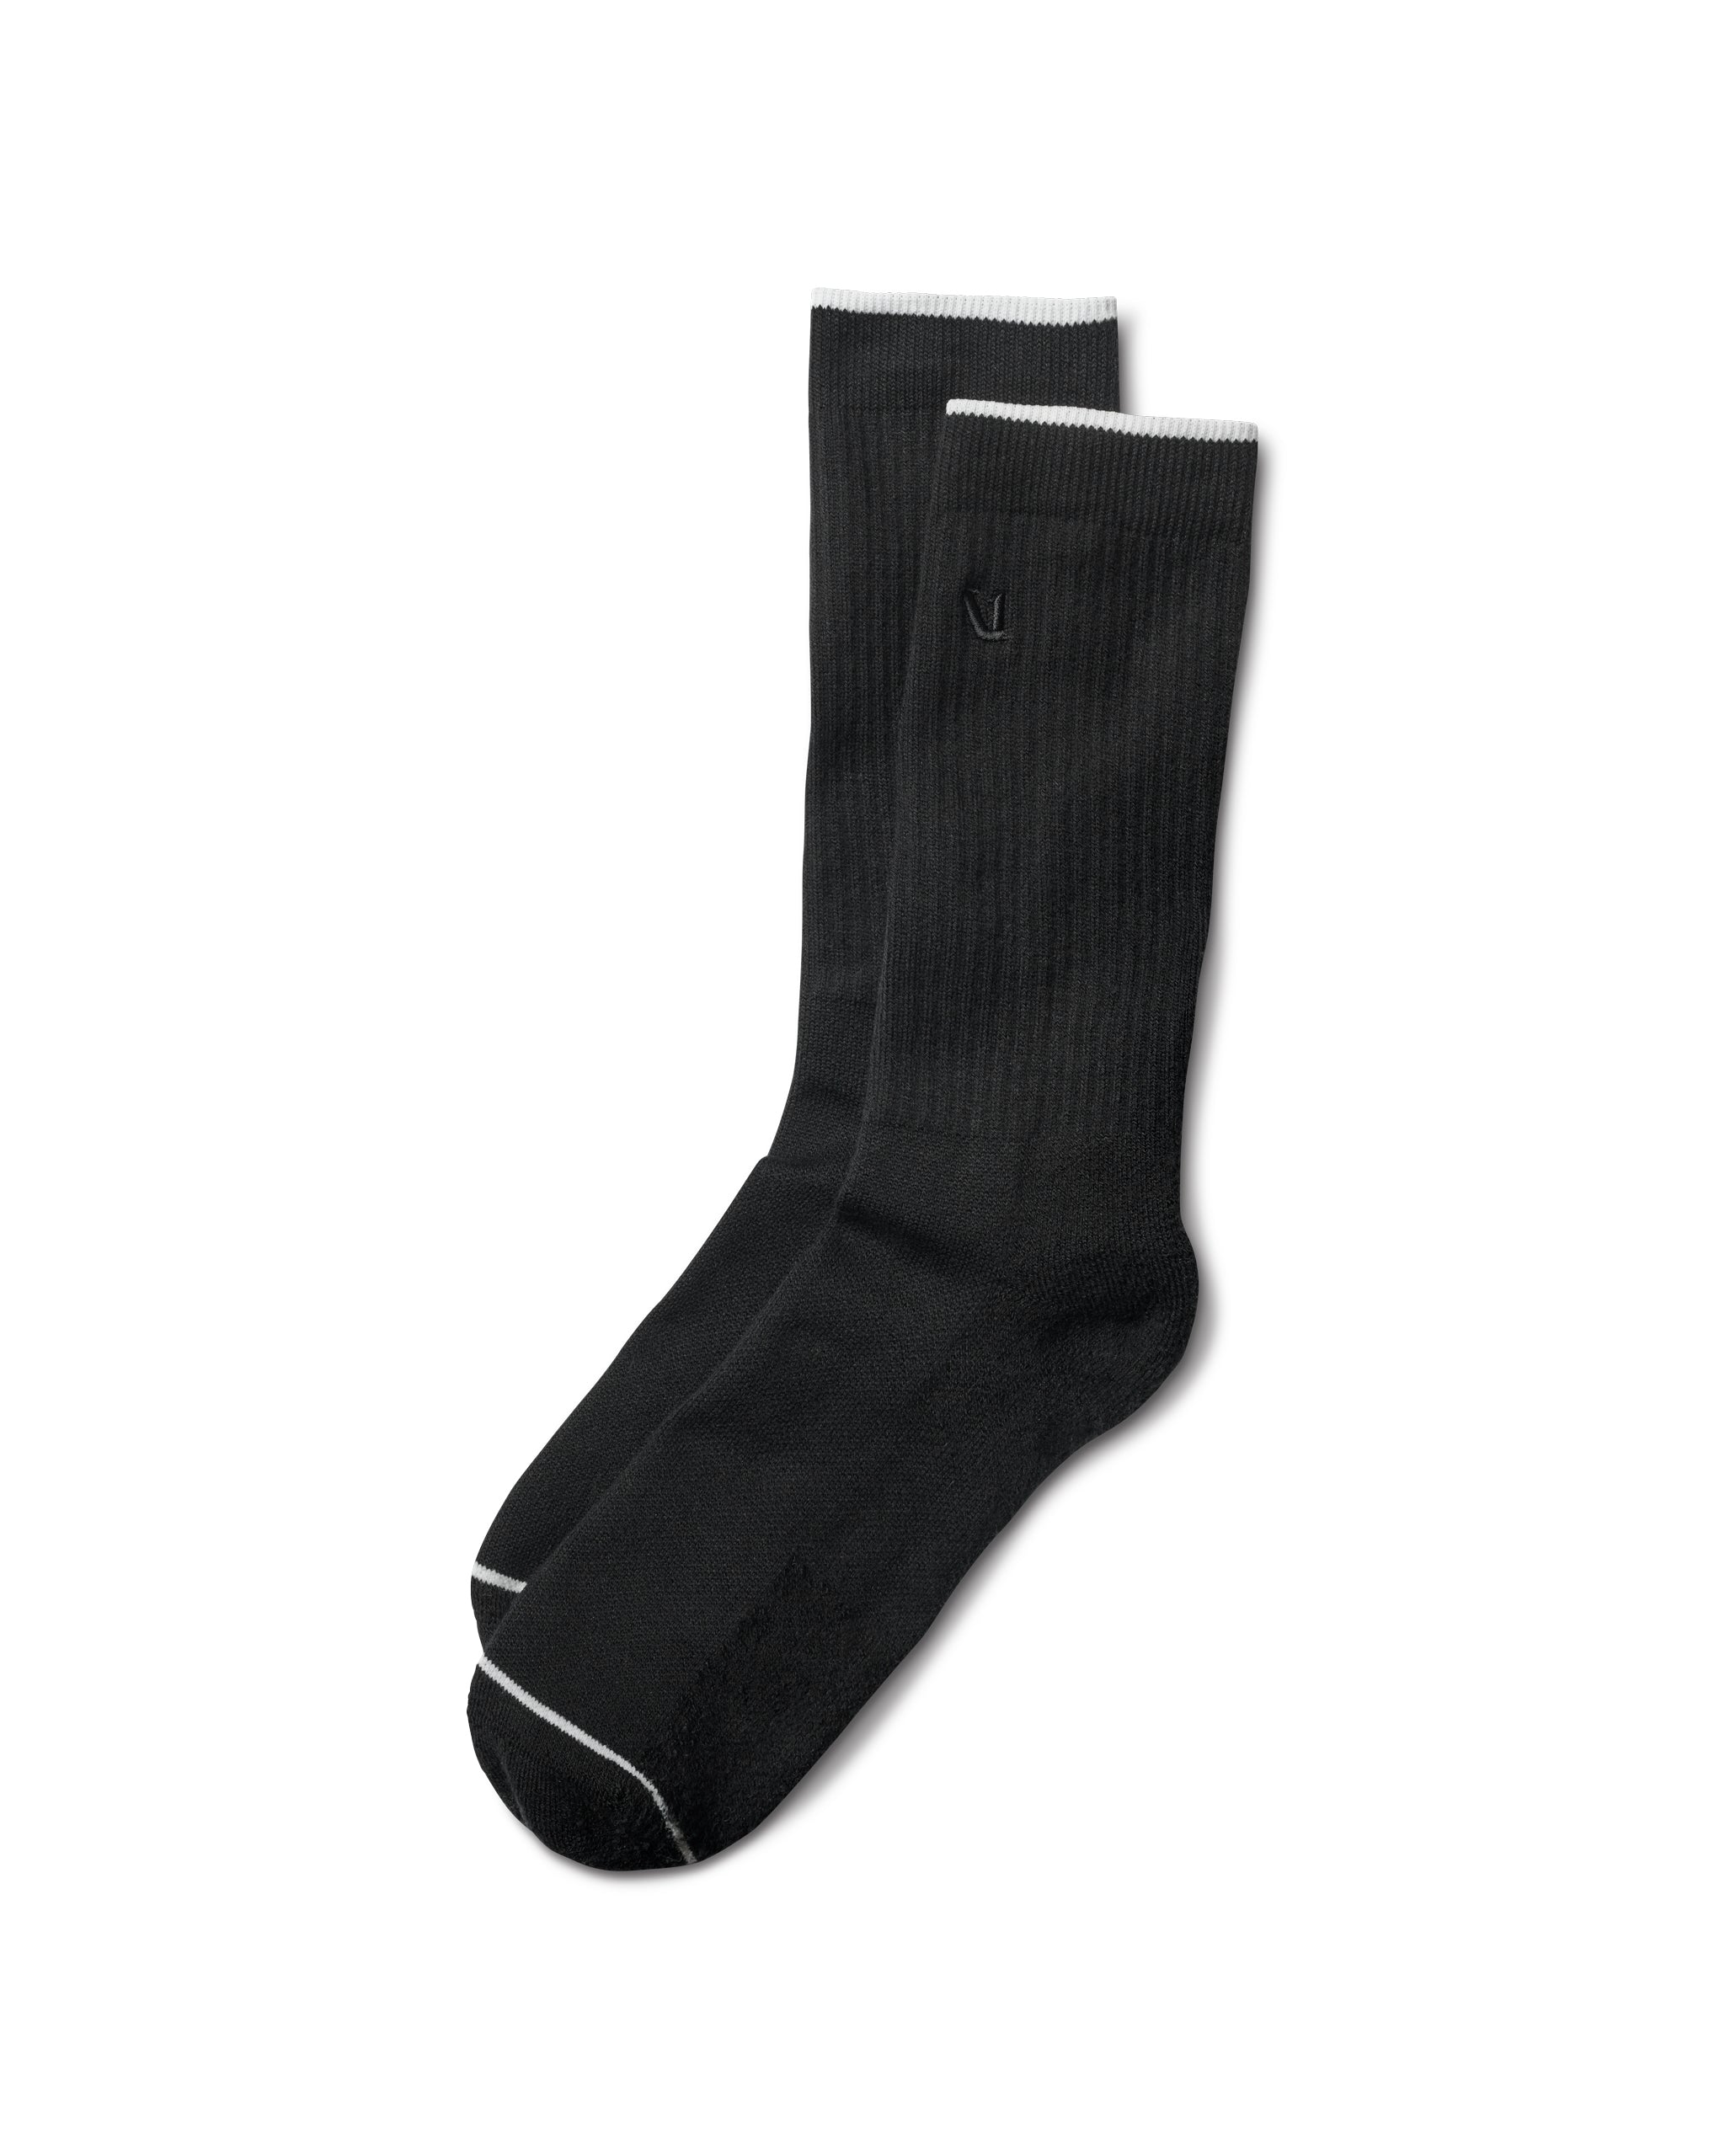 V1 Crew Sock | Black Crew Socks | Vuori Clothing